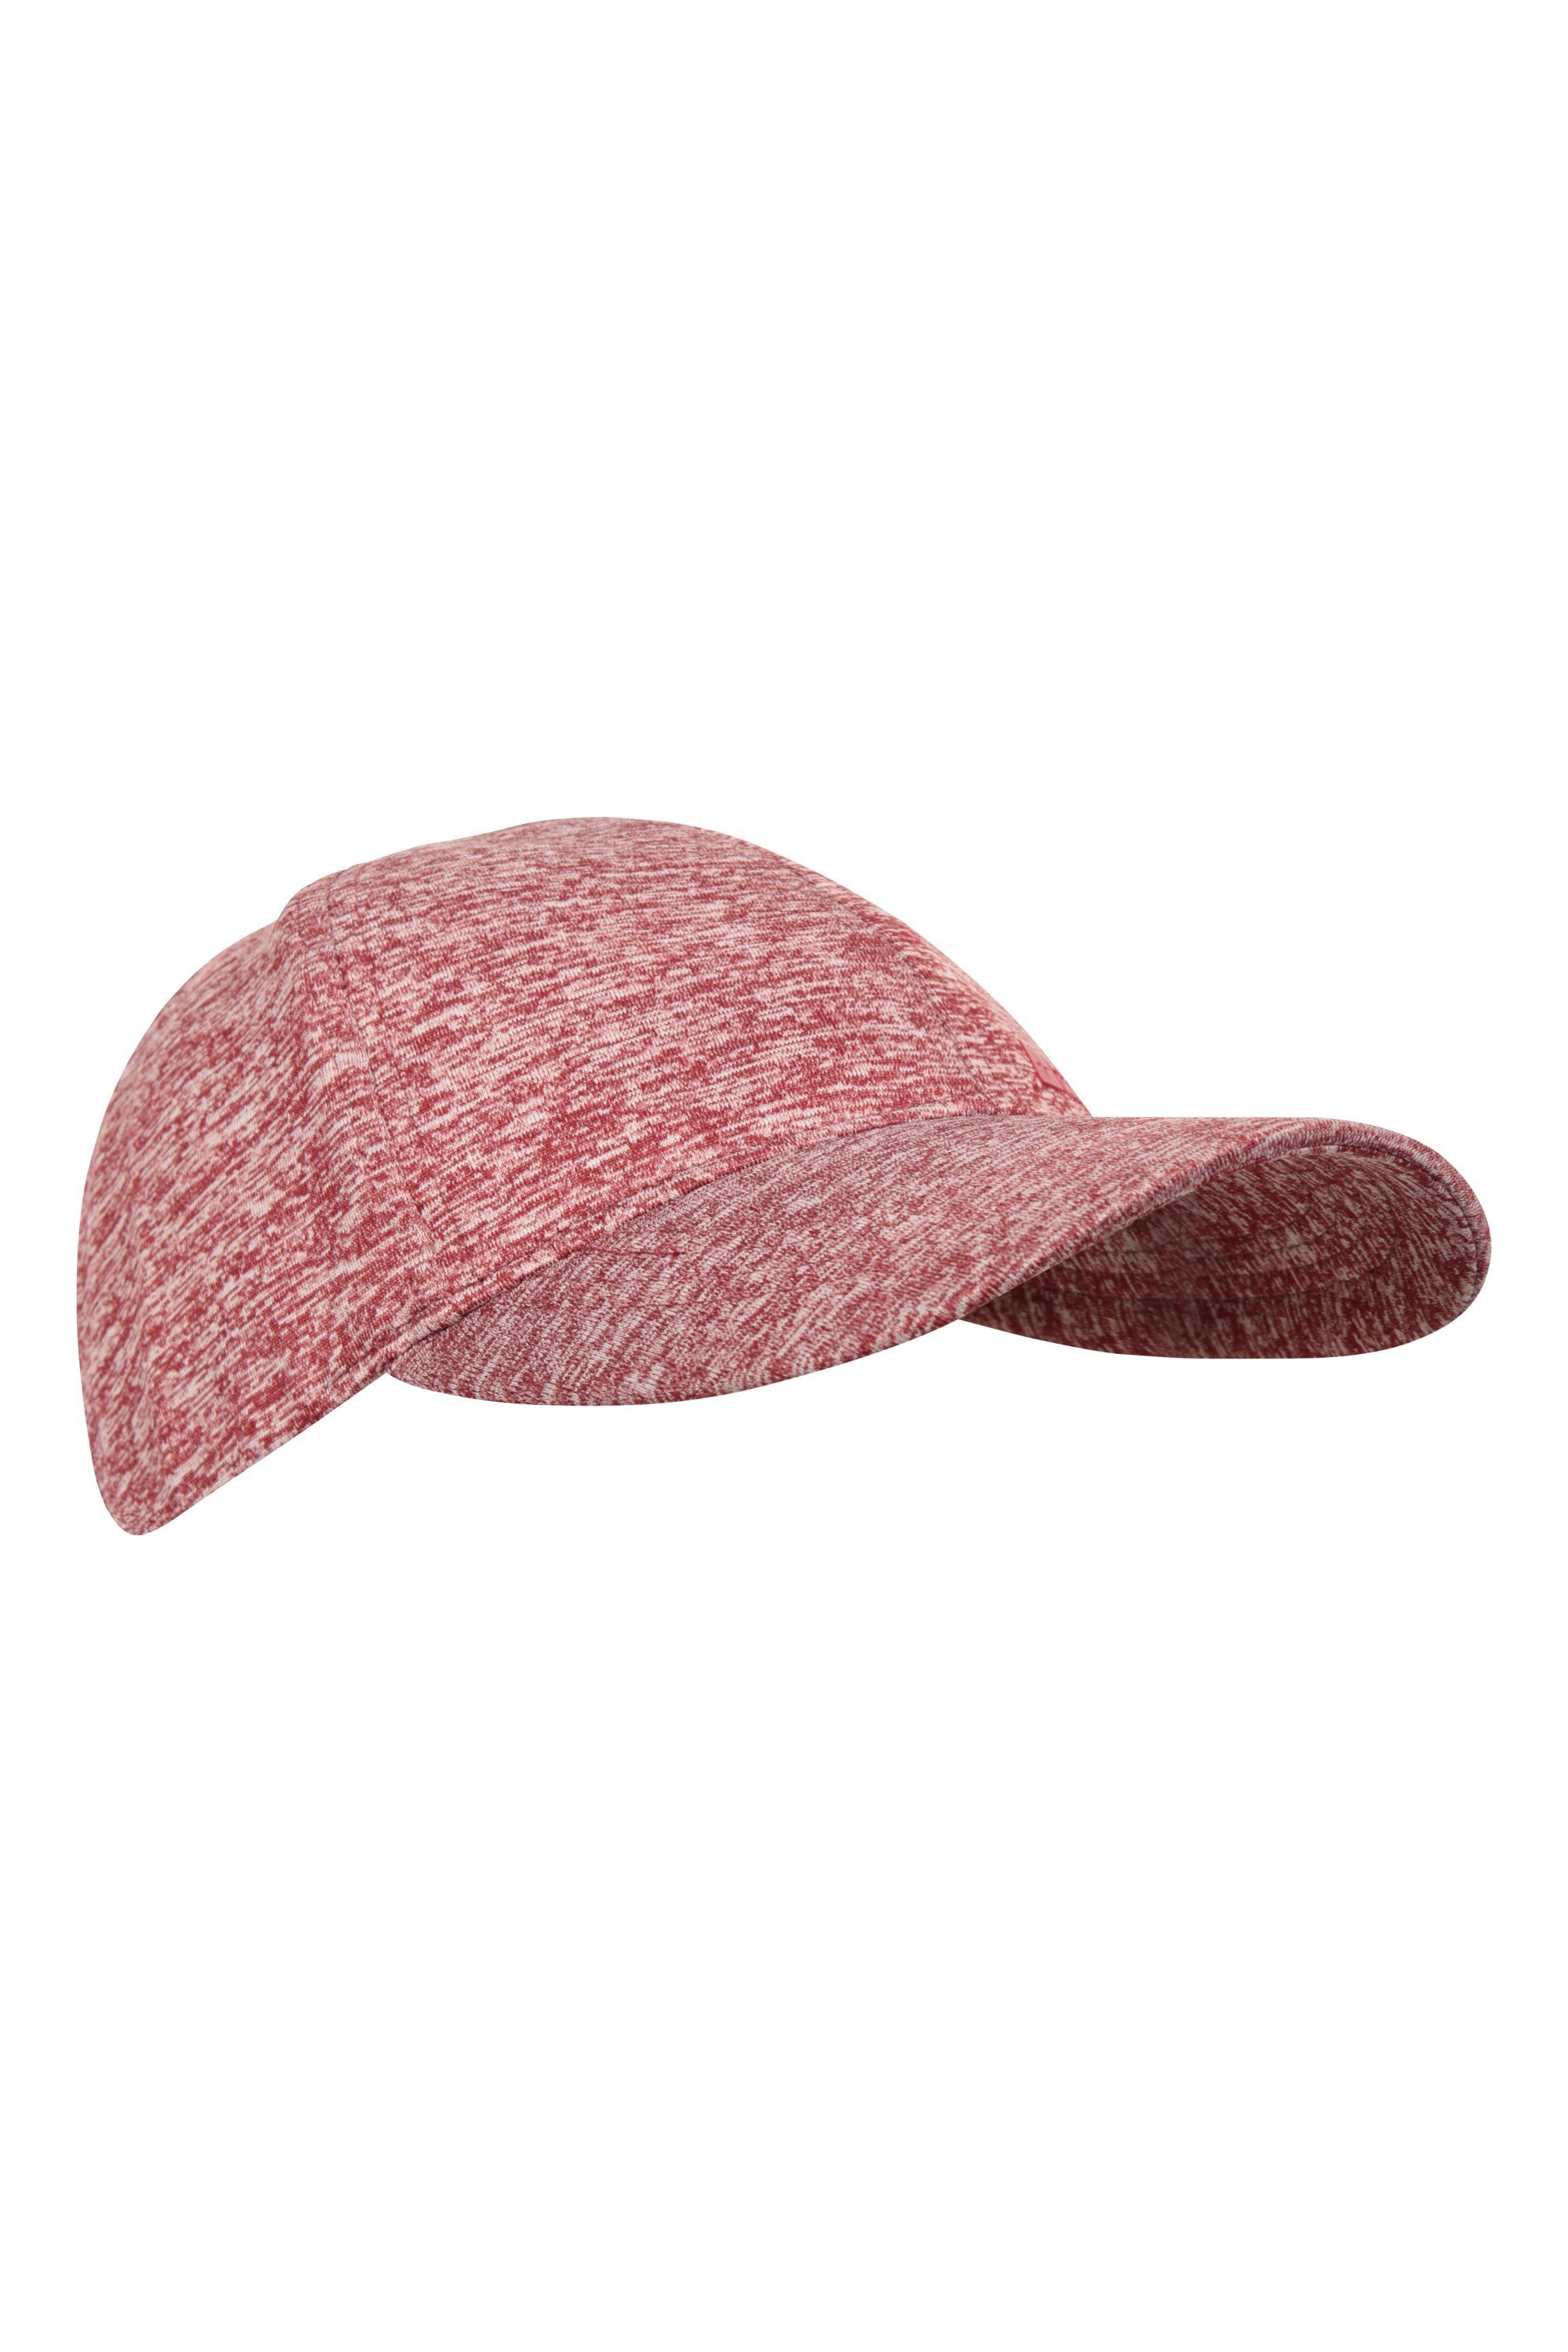 Melange damska czapka z daszkiem - Burgundy